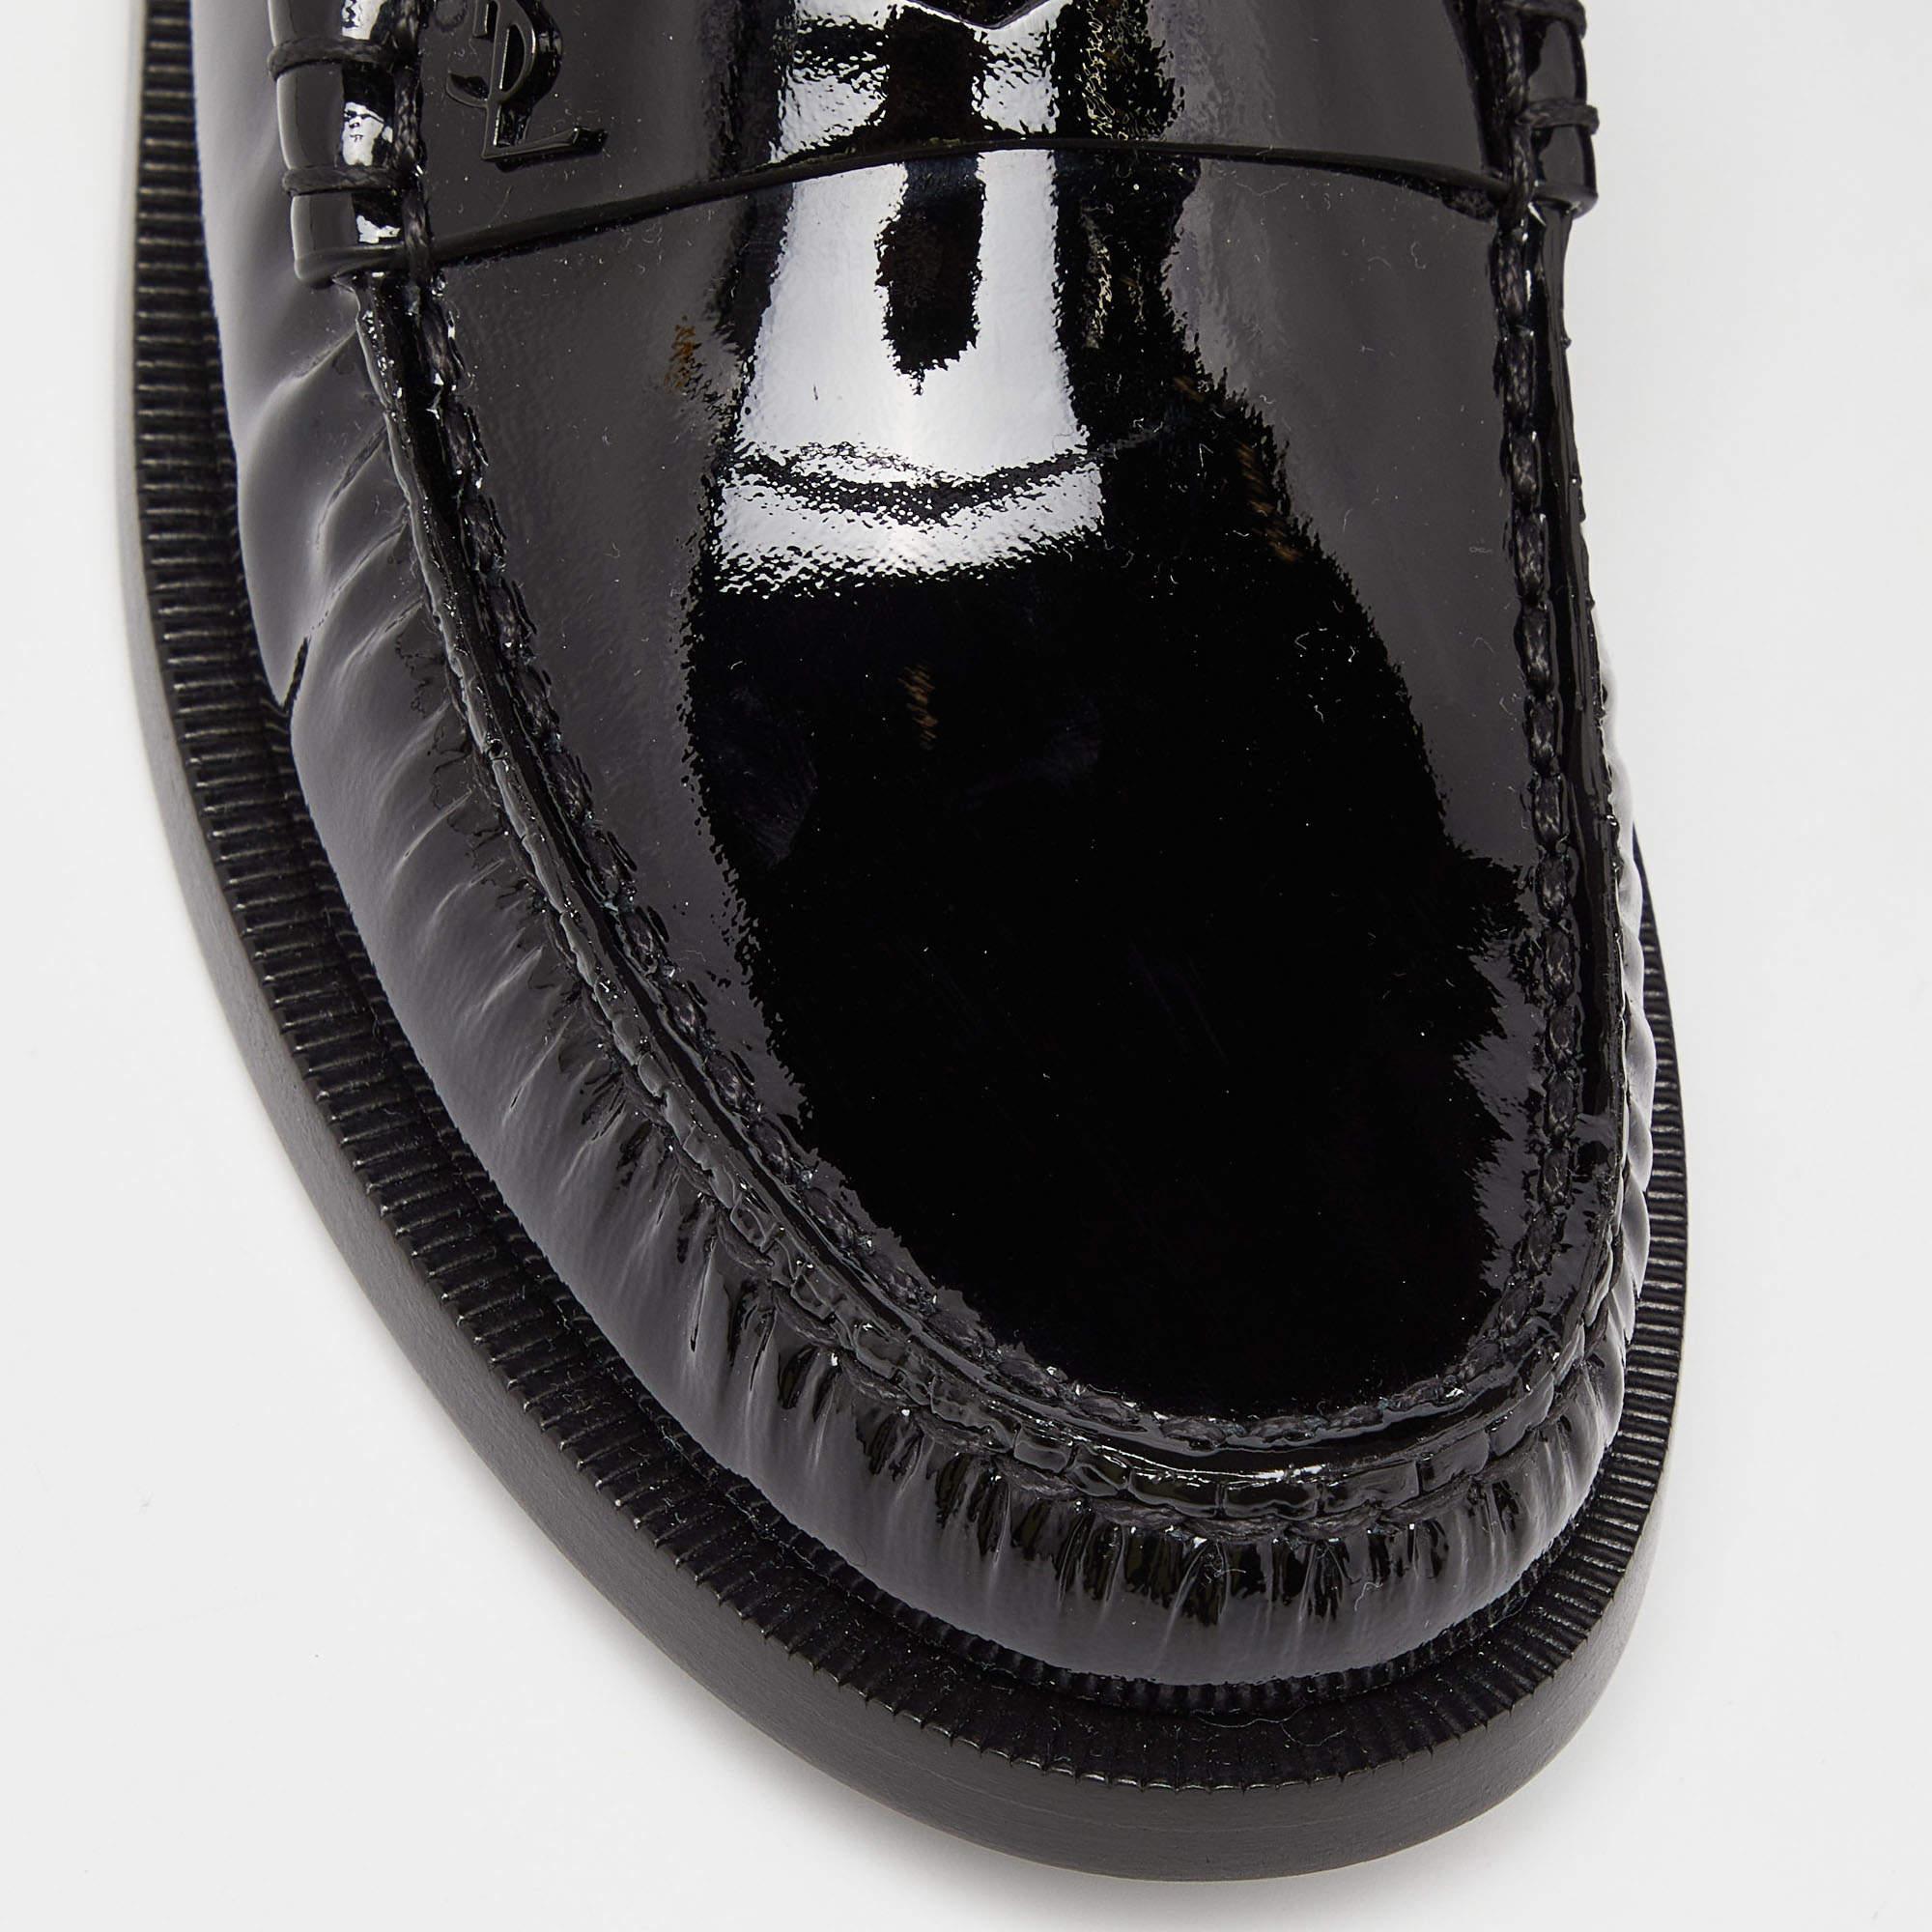 Saint Laurent Black Patent Leather Penny Le Loafers Size 37.5 4